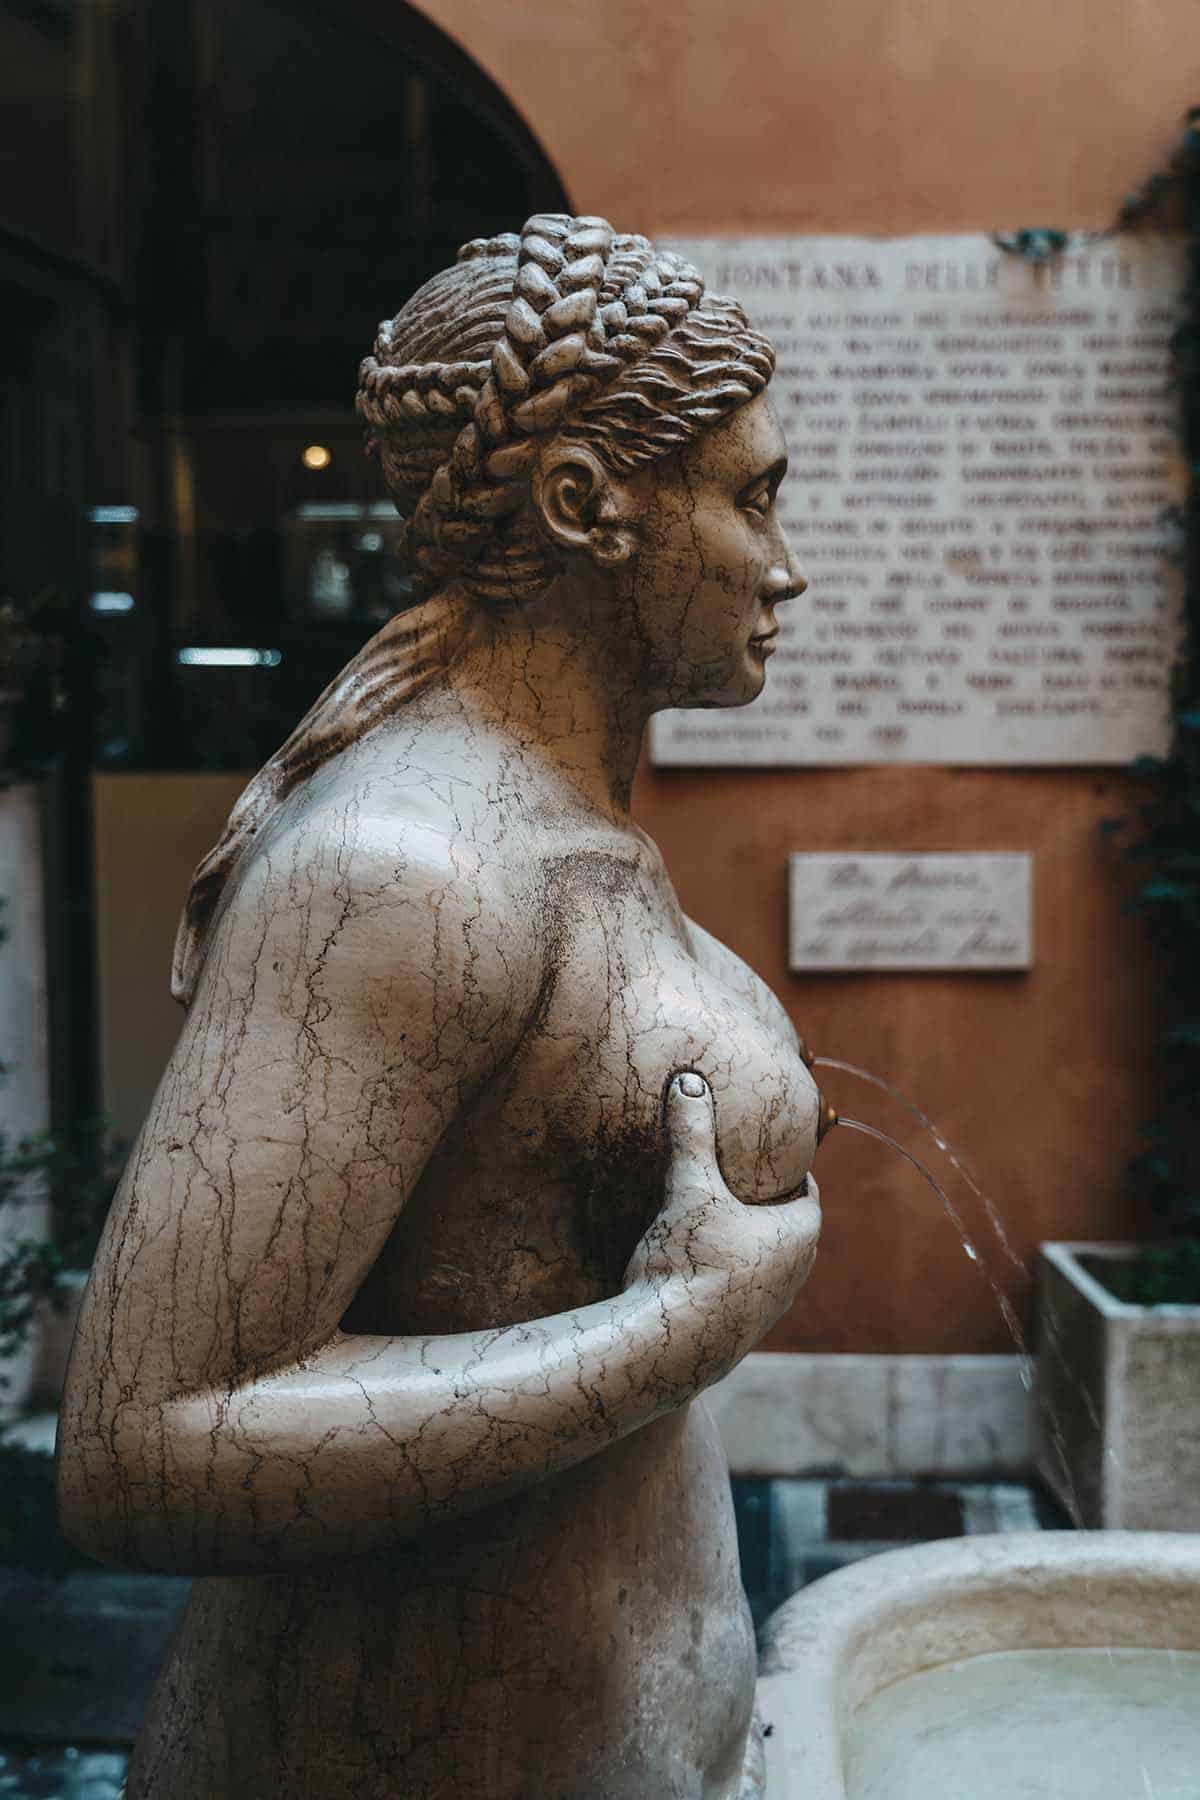 Springbrunnen Fontana delle Tette in Treviso